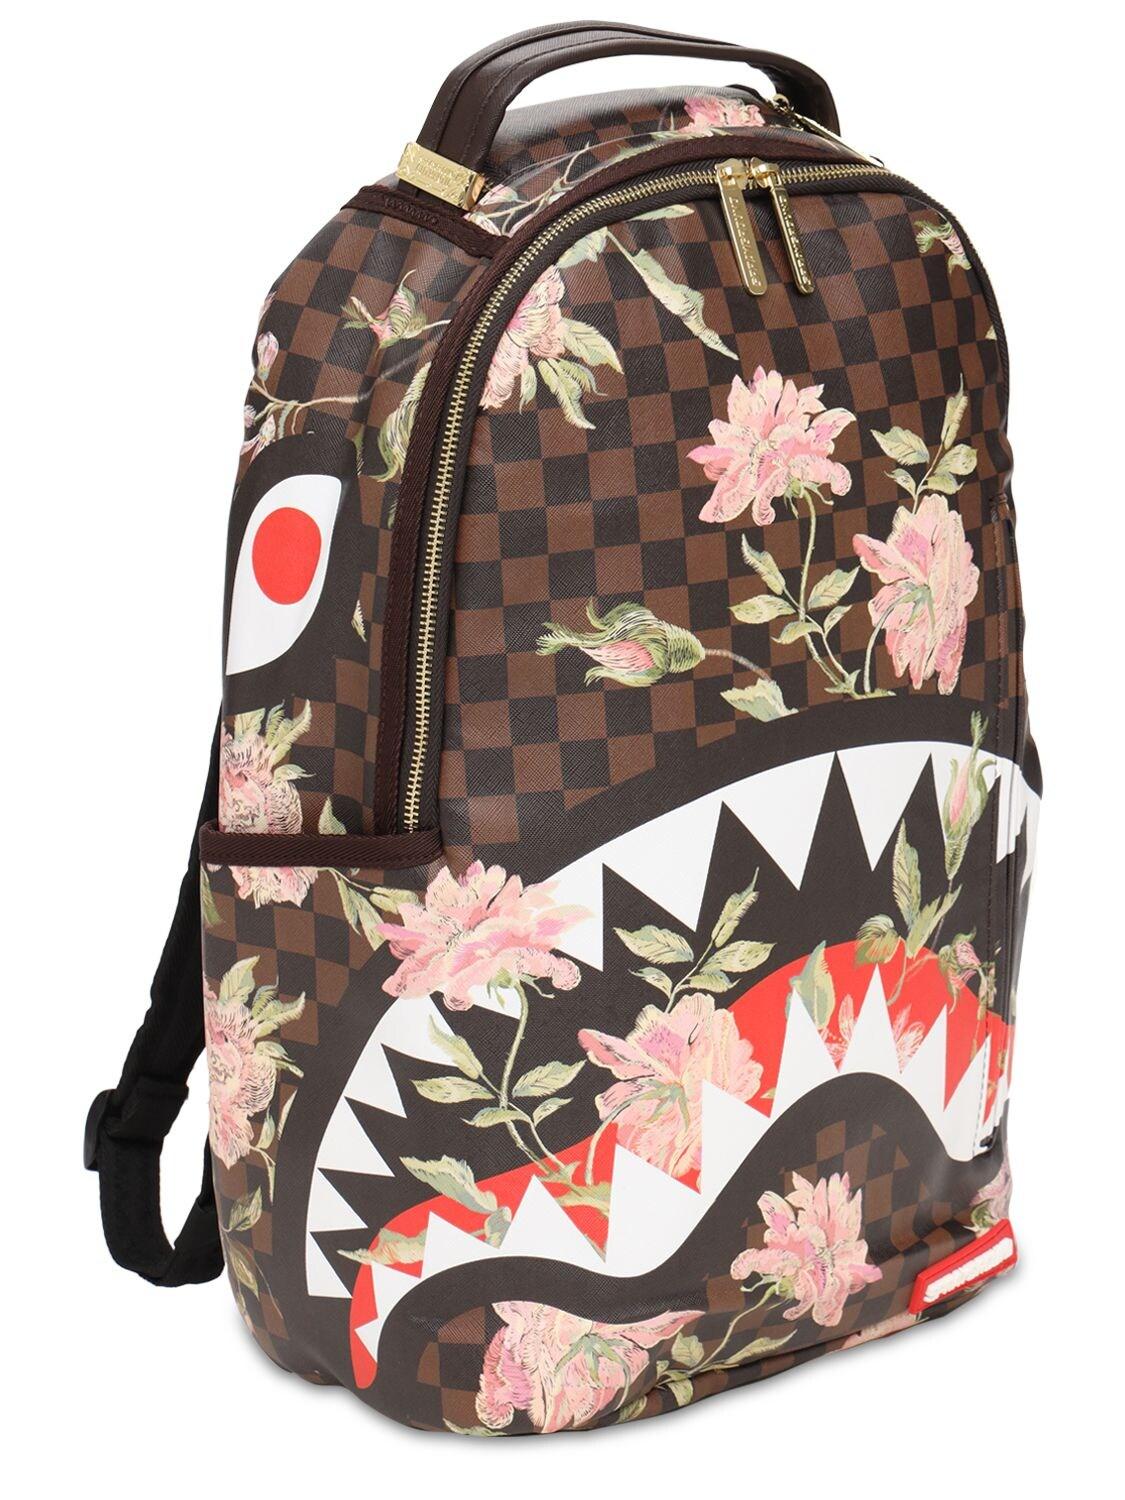 Sprayground Backpack Neon Floral